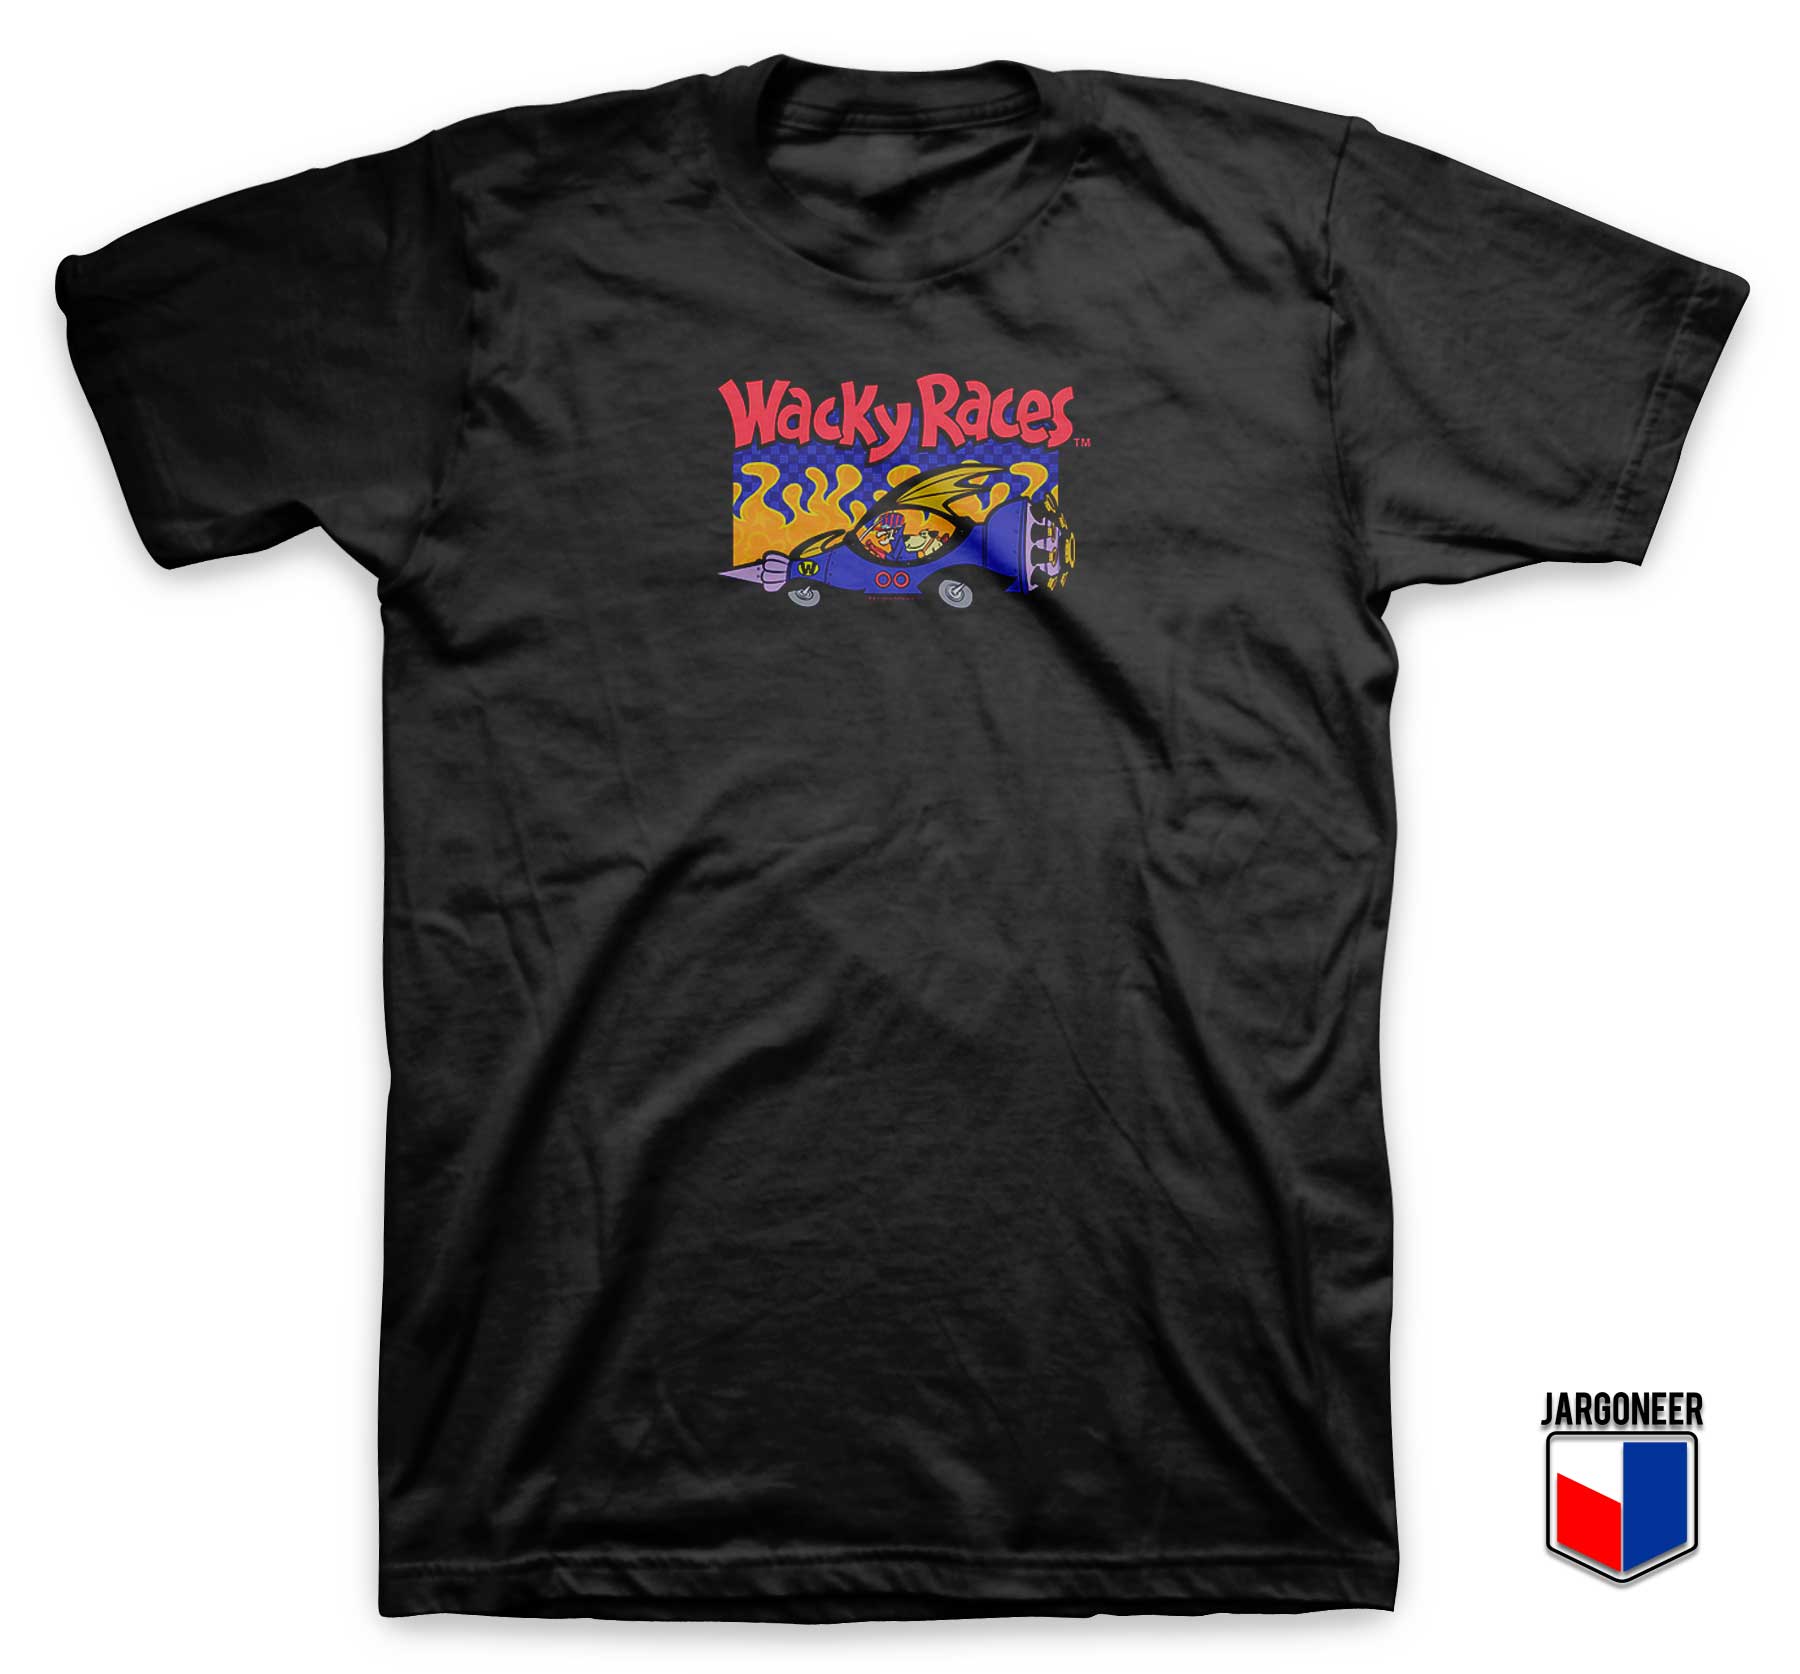 Wacky Races Man T Shirt - Shop Unique Graphic Cool Shirt Designs